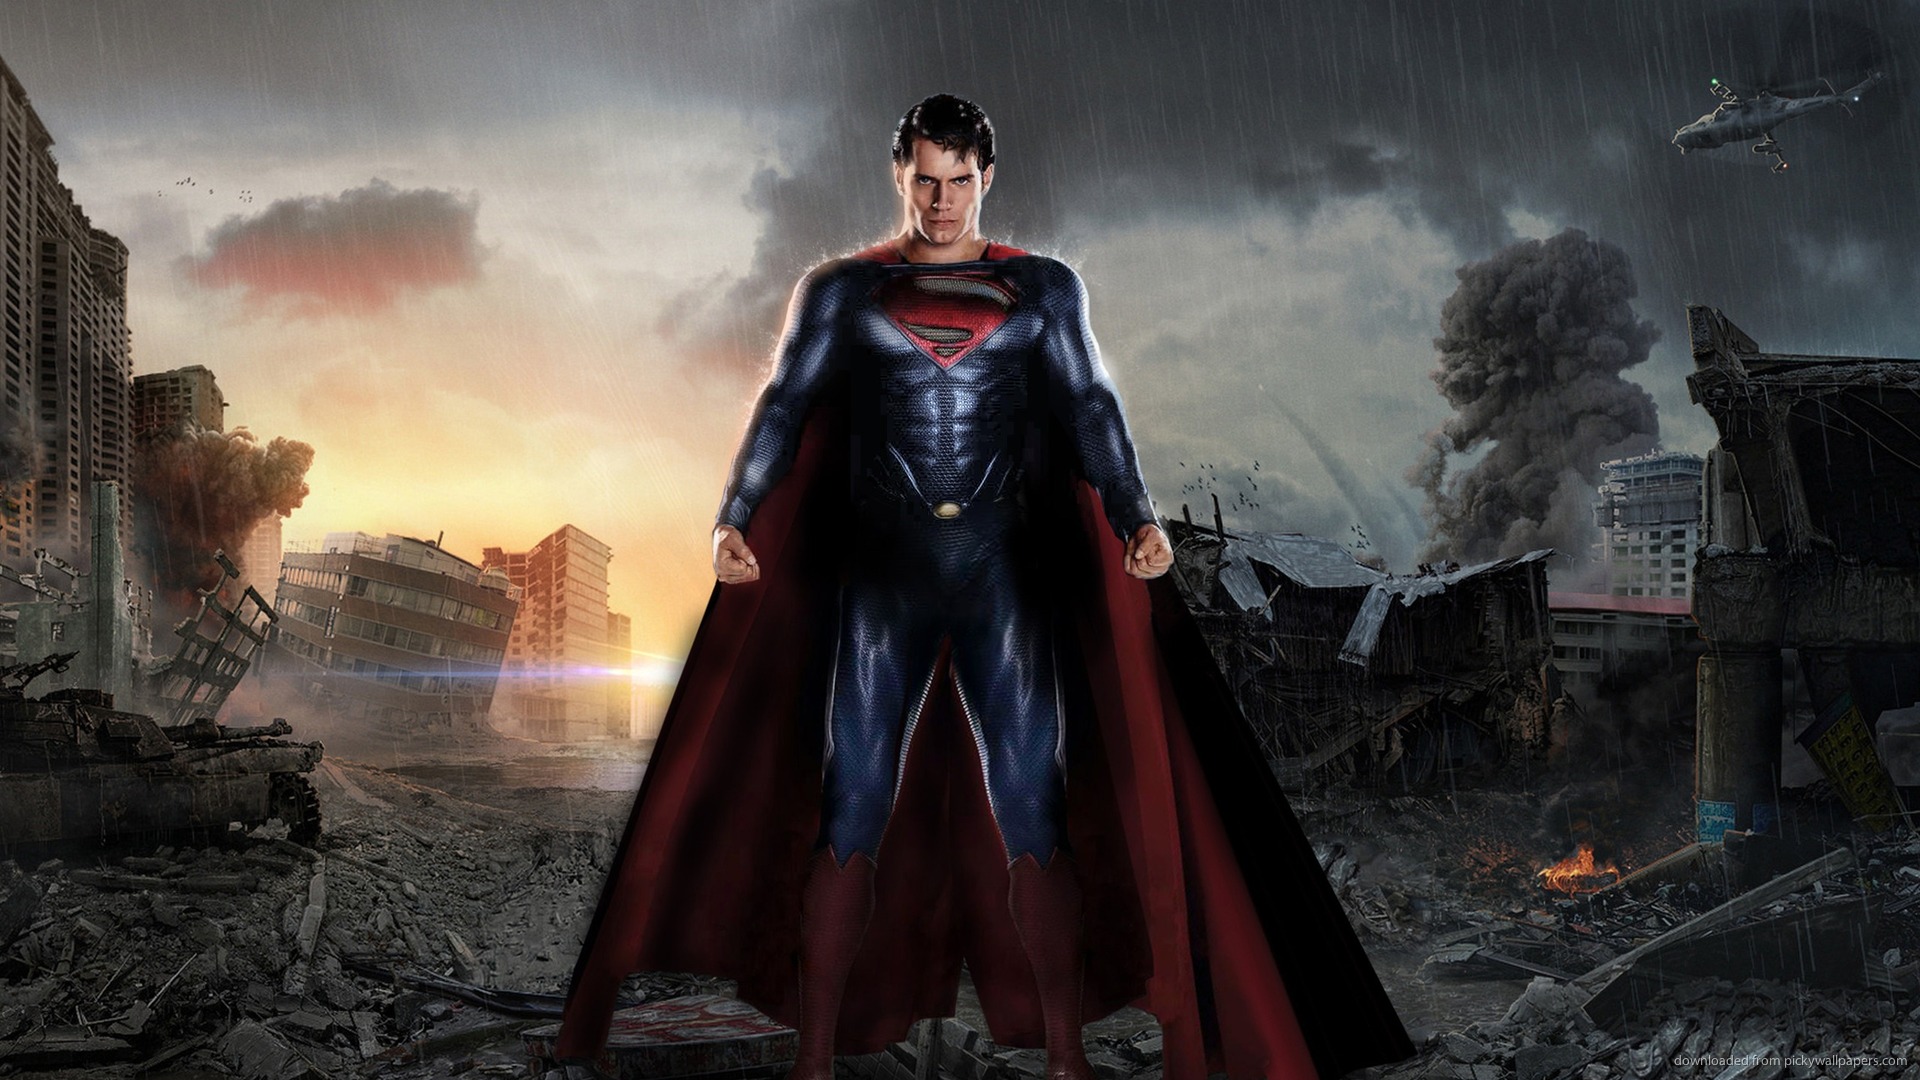 Download 1920x1080 Man Of Steel Superman Between The Ruins Wallpaper